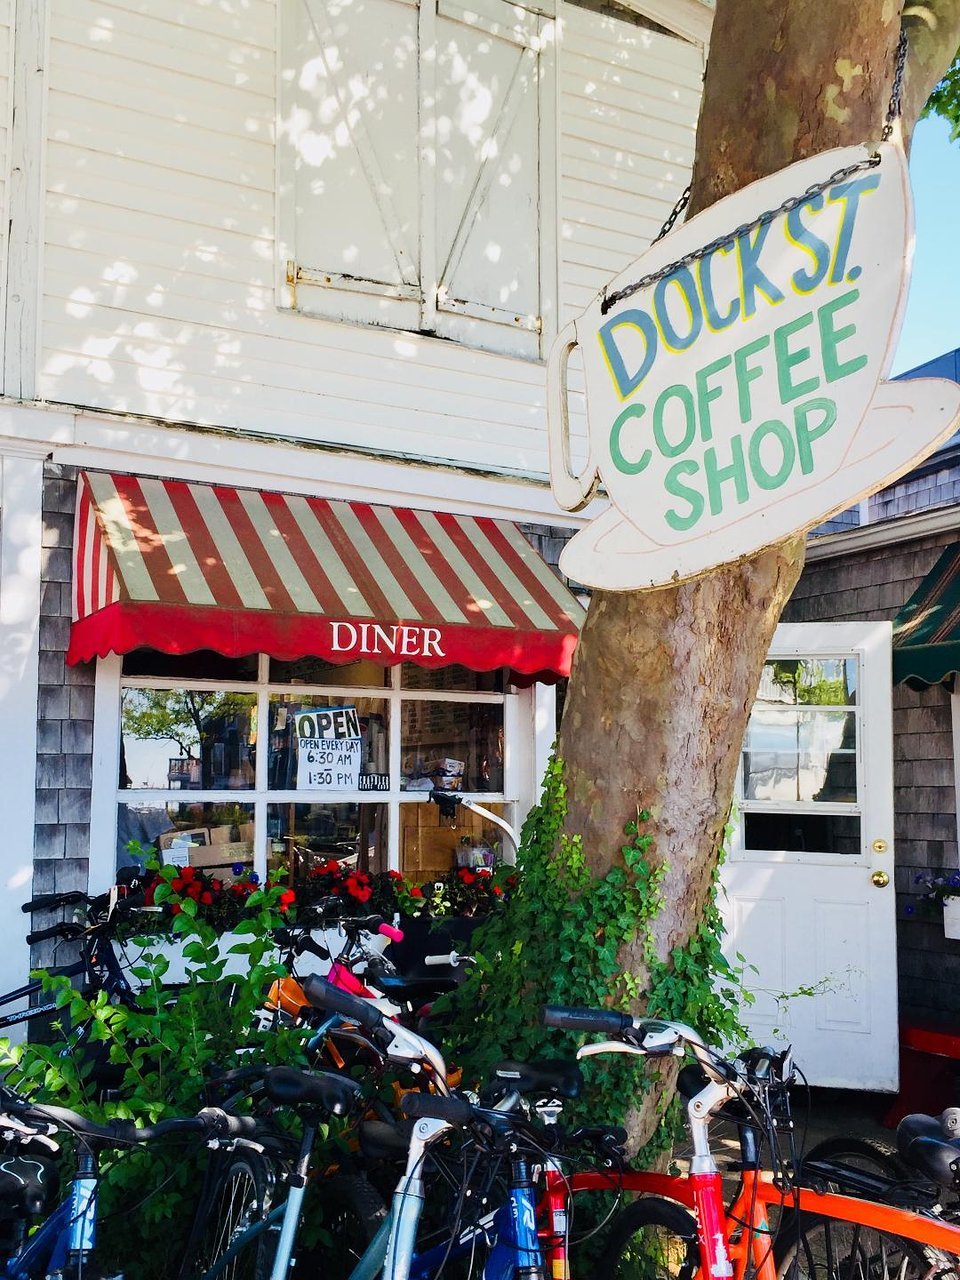 Dock Street Coffee Shop